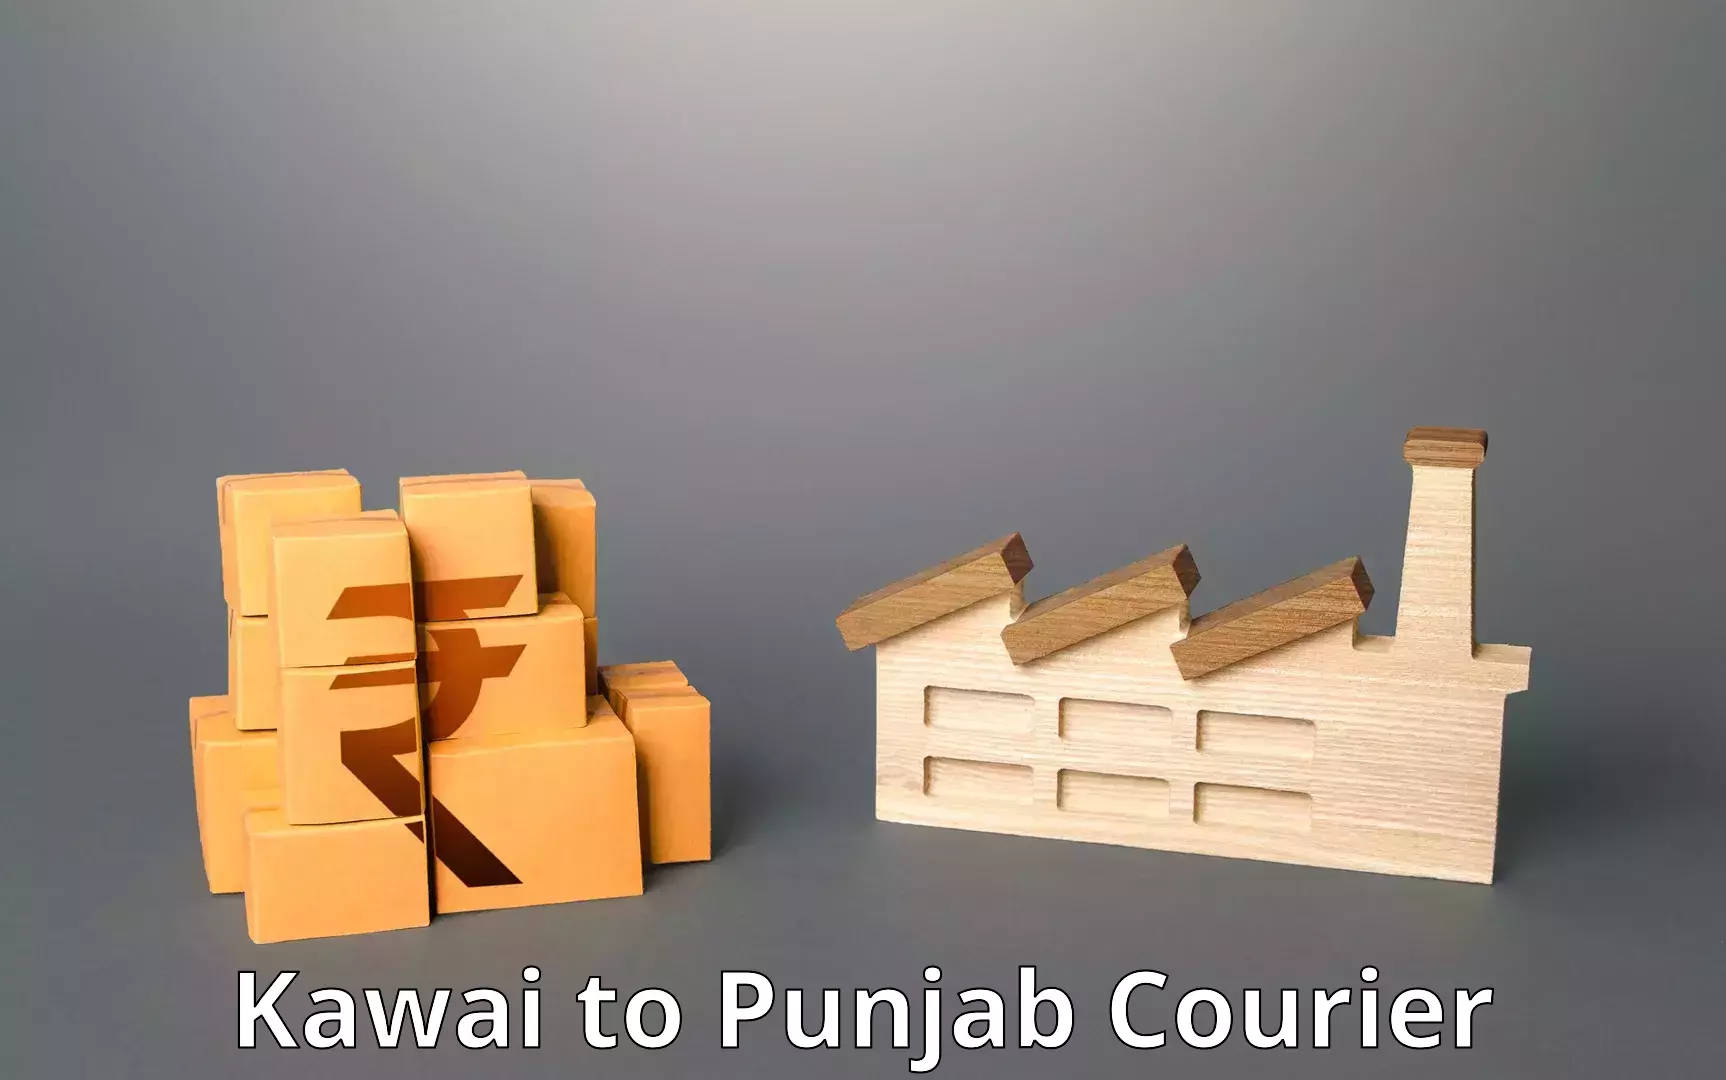 Customer-centric shipping in Kawai to Punjab